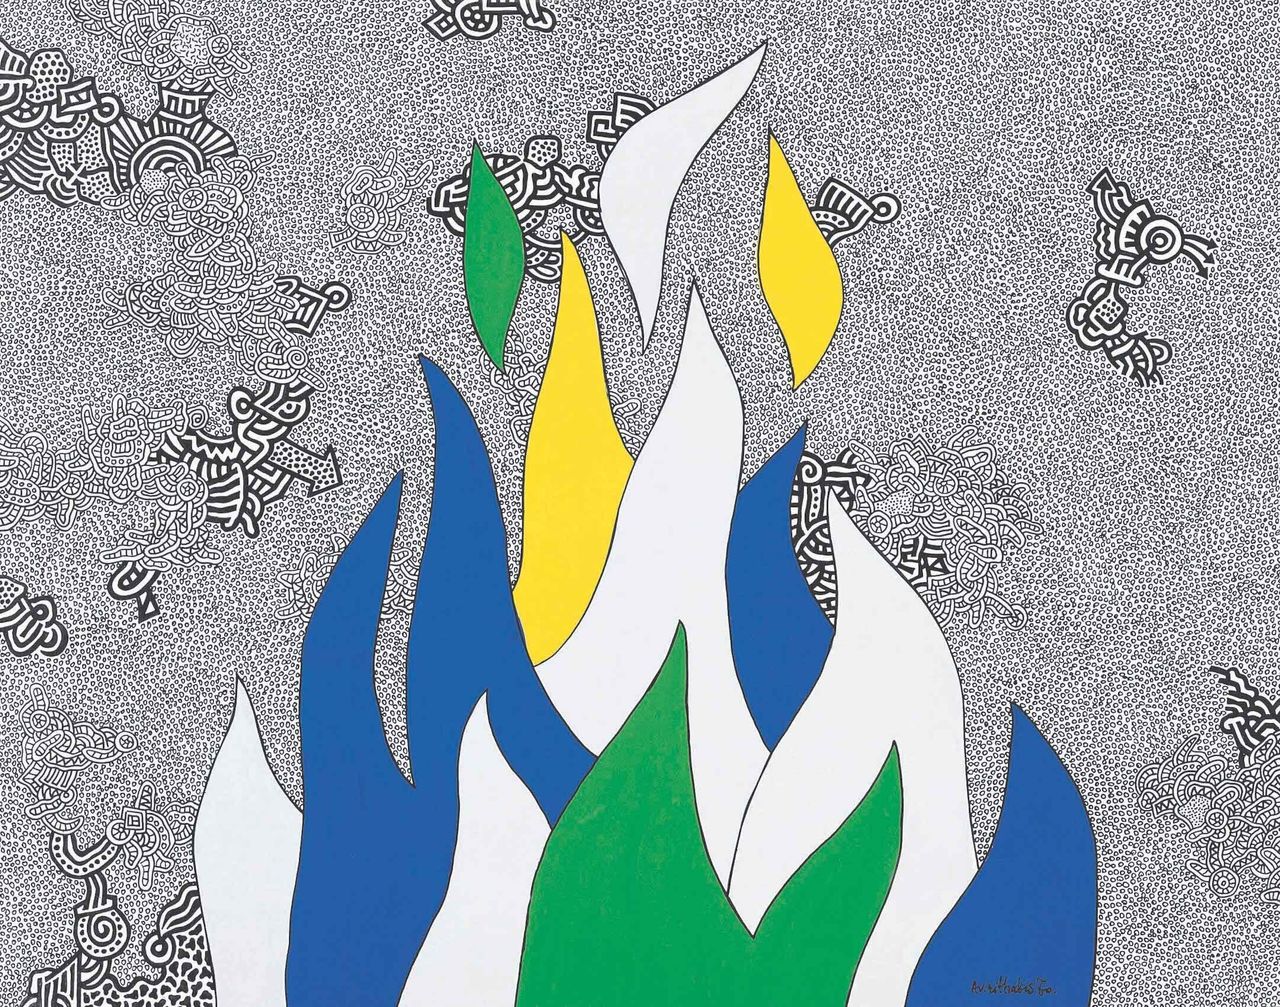 Φωτιά, 1970 μελάνι και τέμπερα σε χαρτί 50x70 εκ.© 2019 The Estate of Alexis Akrithakis